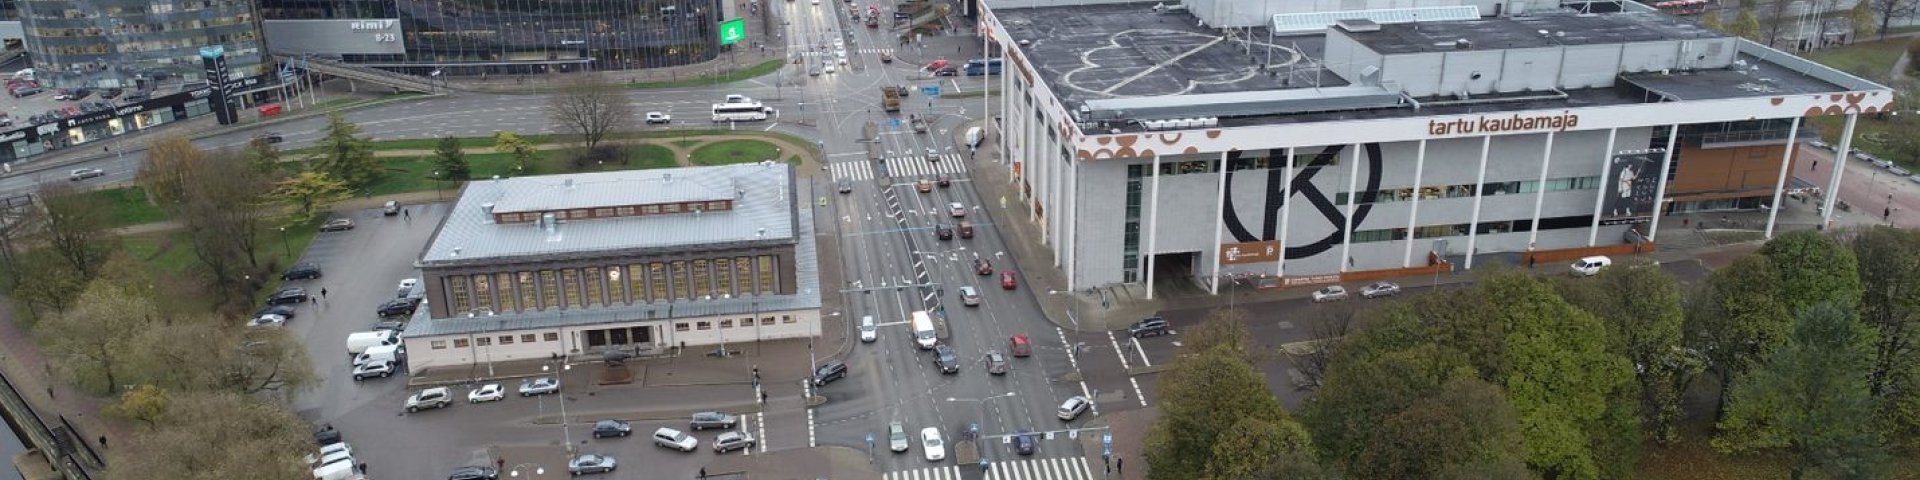 View to Tartu city centre, Kaubamaja